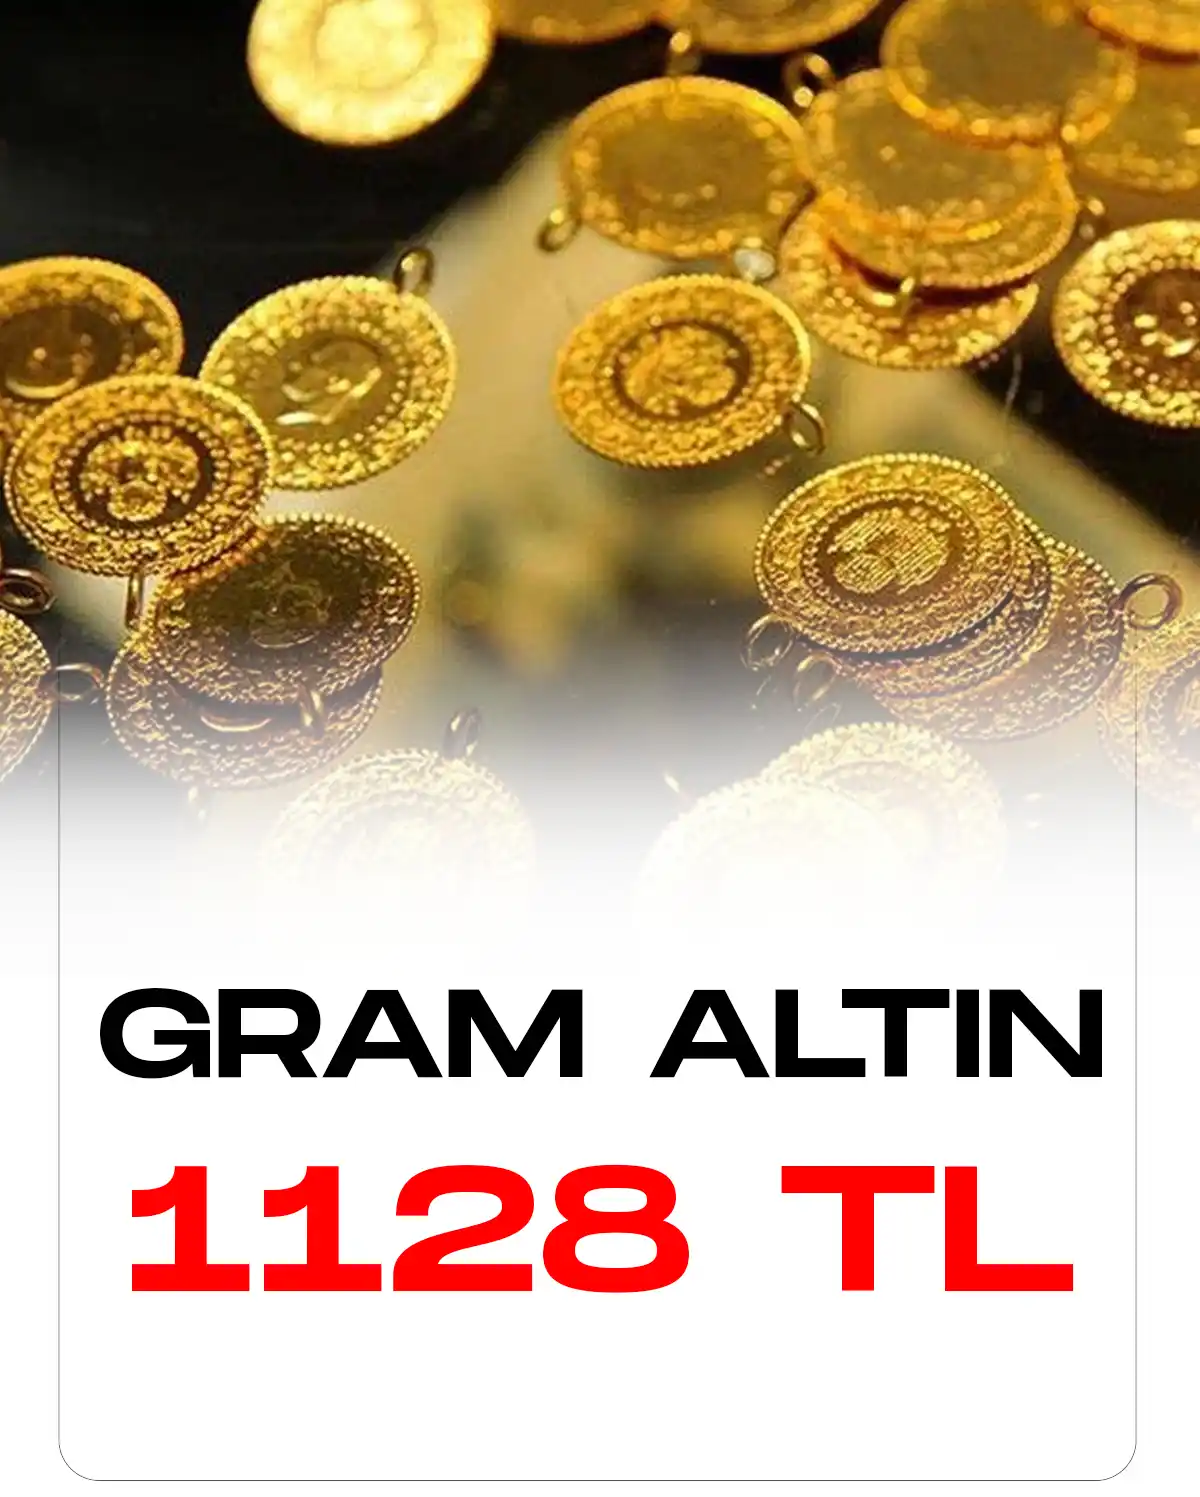 Gram altın 1128 TL'den işlem görüyor.